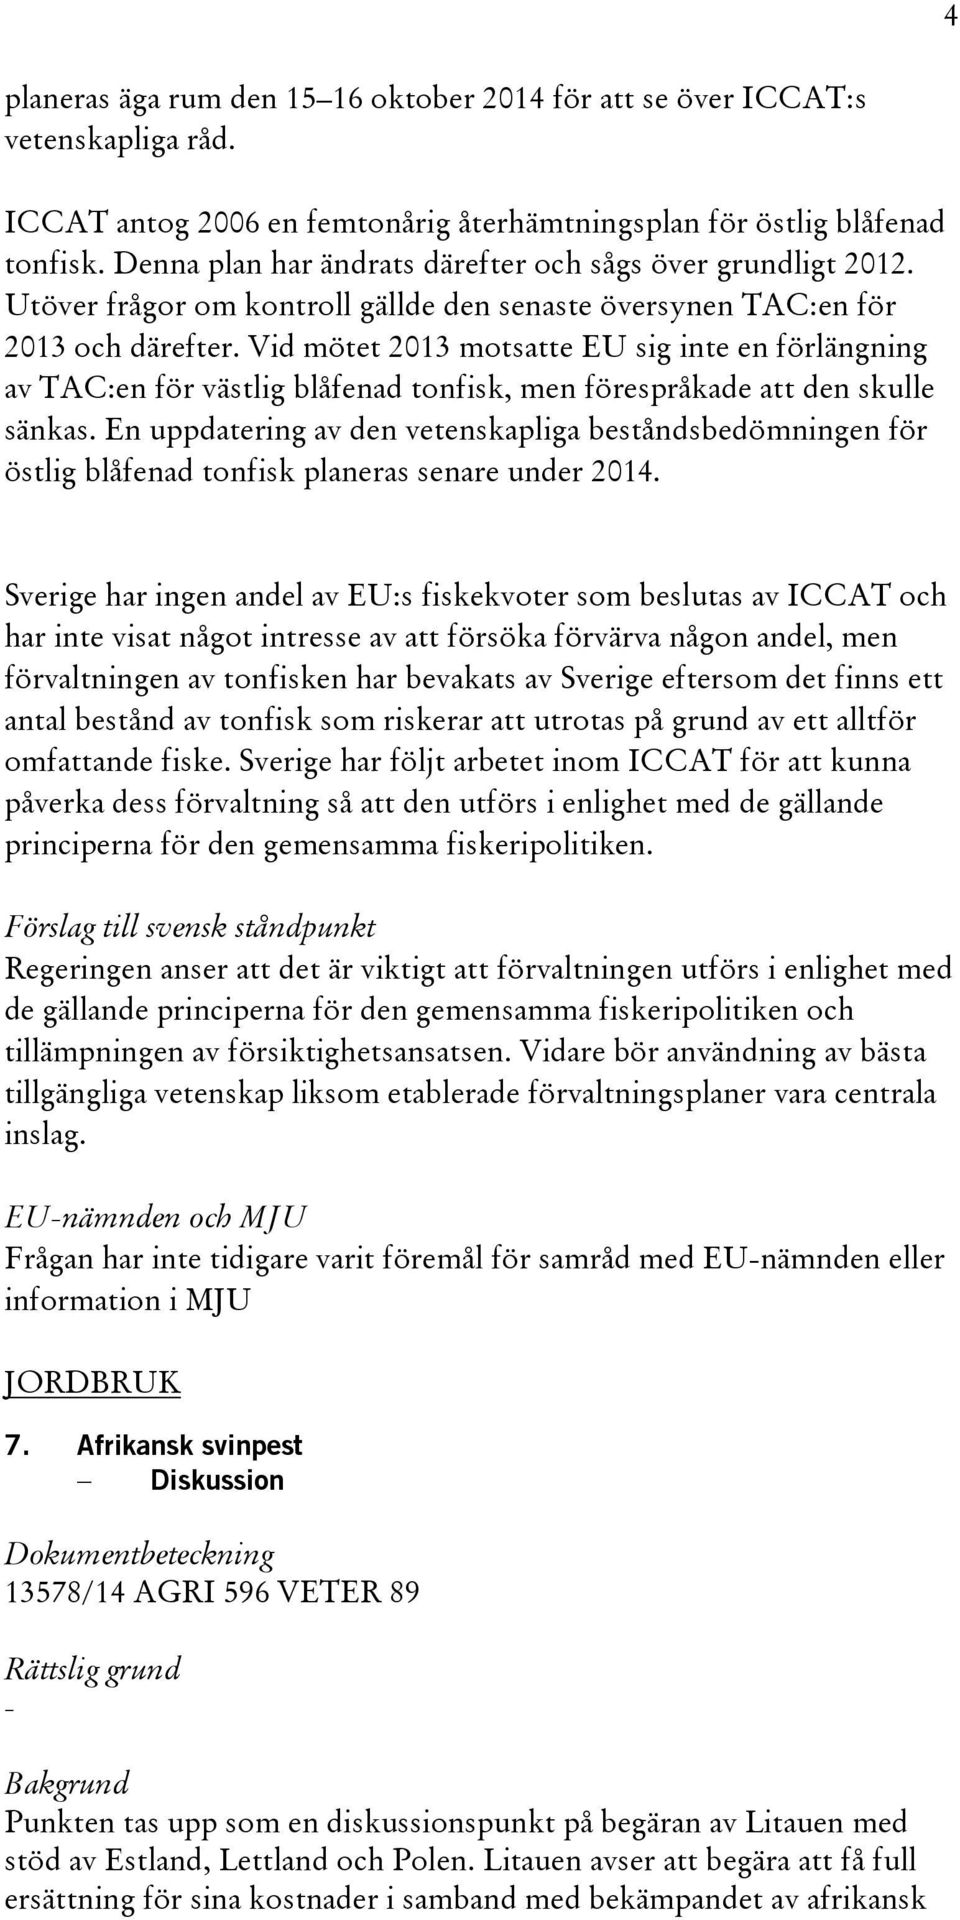 Vid mötet 2013 motsatte EU sig inte en förlängning av TAC:en för västlig blåfenad tonfisk, men förespråkade att den skulle sänkas.